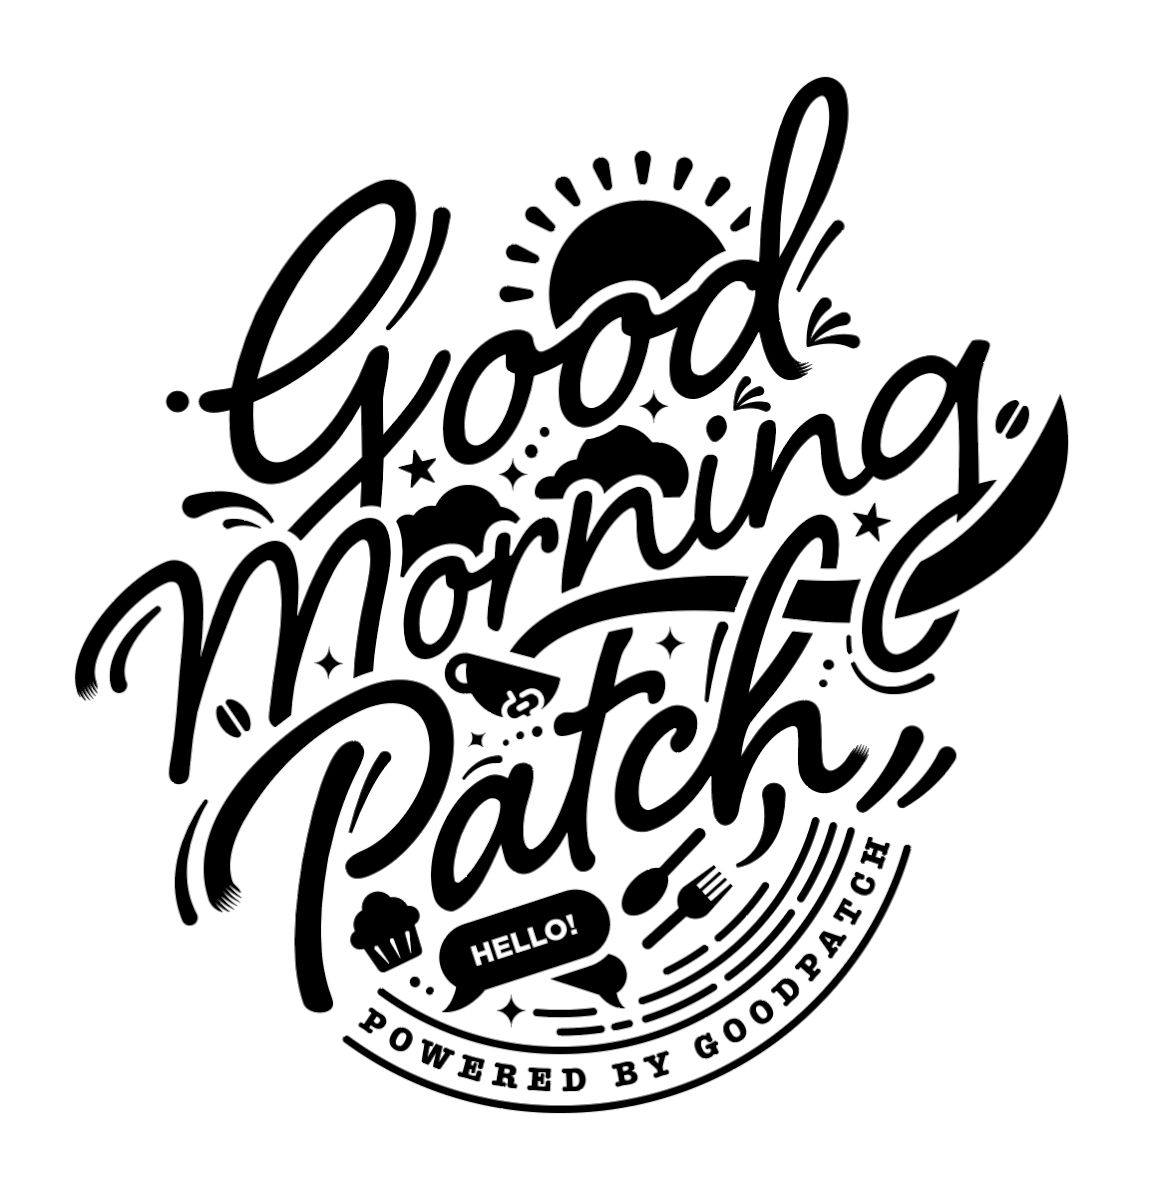 Good Morning Patchのロゴを作ったよって話 Blog Goodpatch グッドパッチ